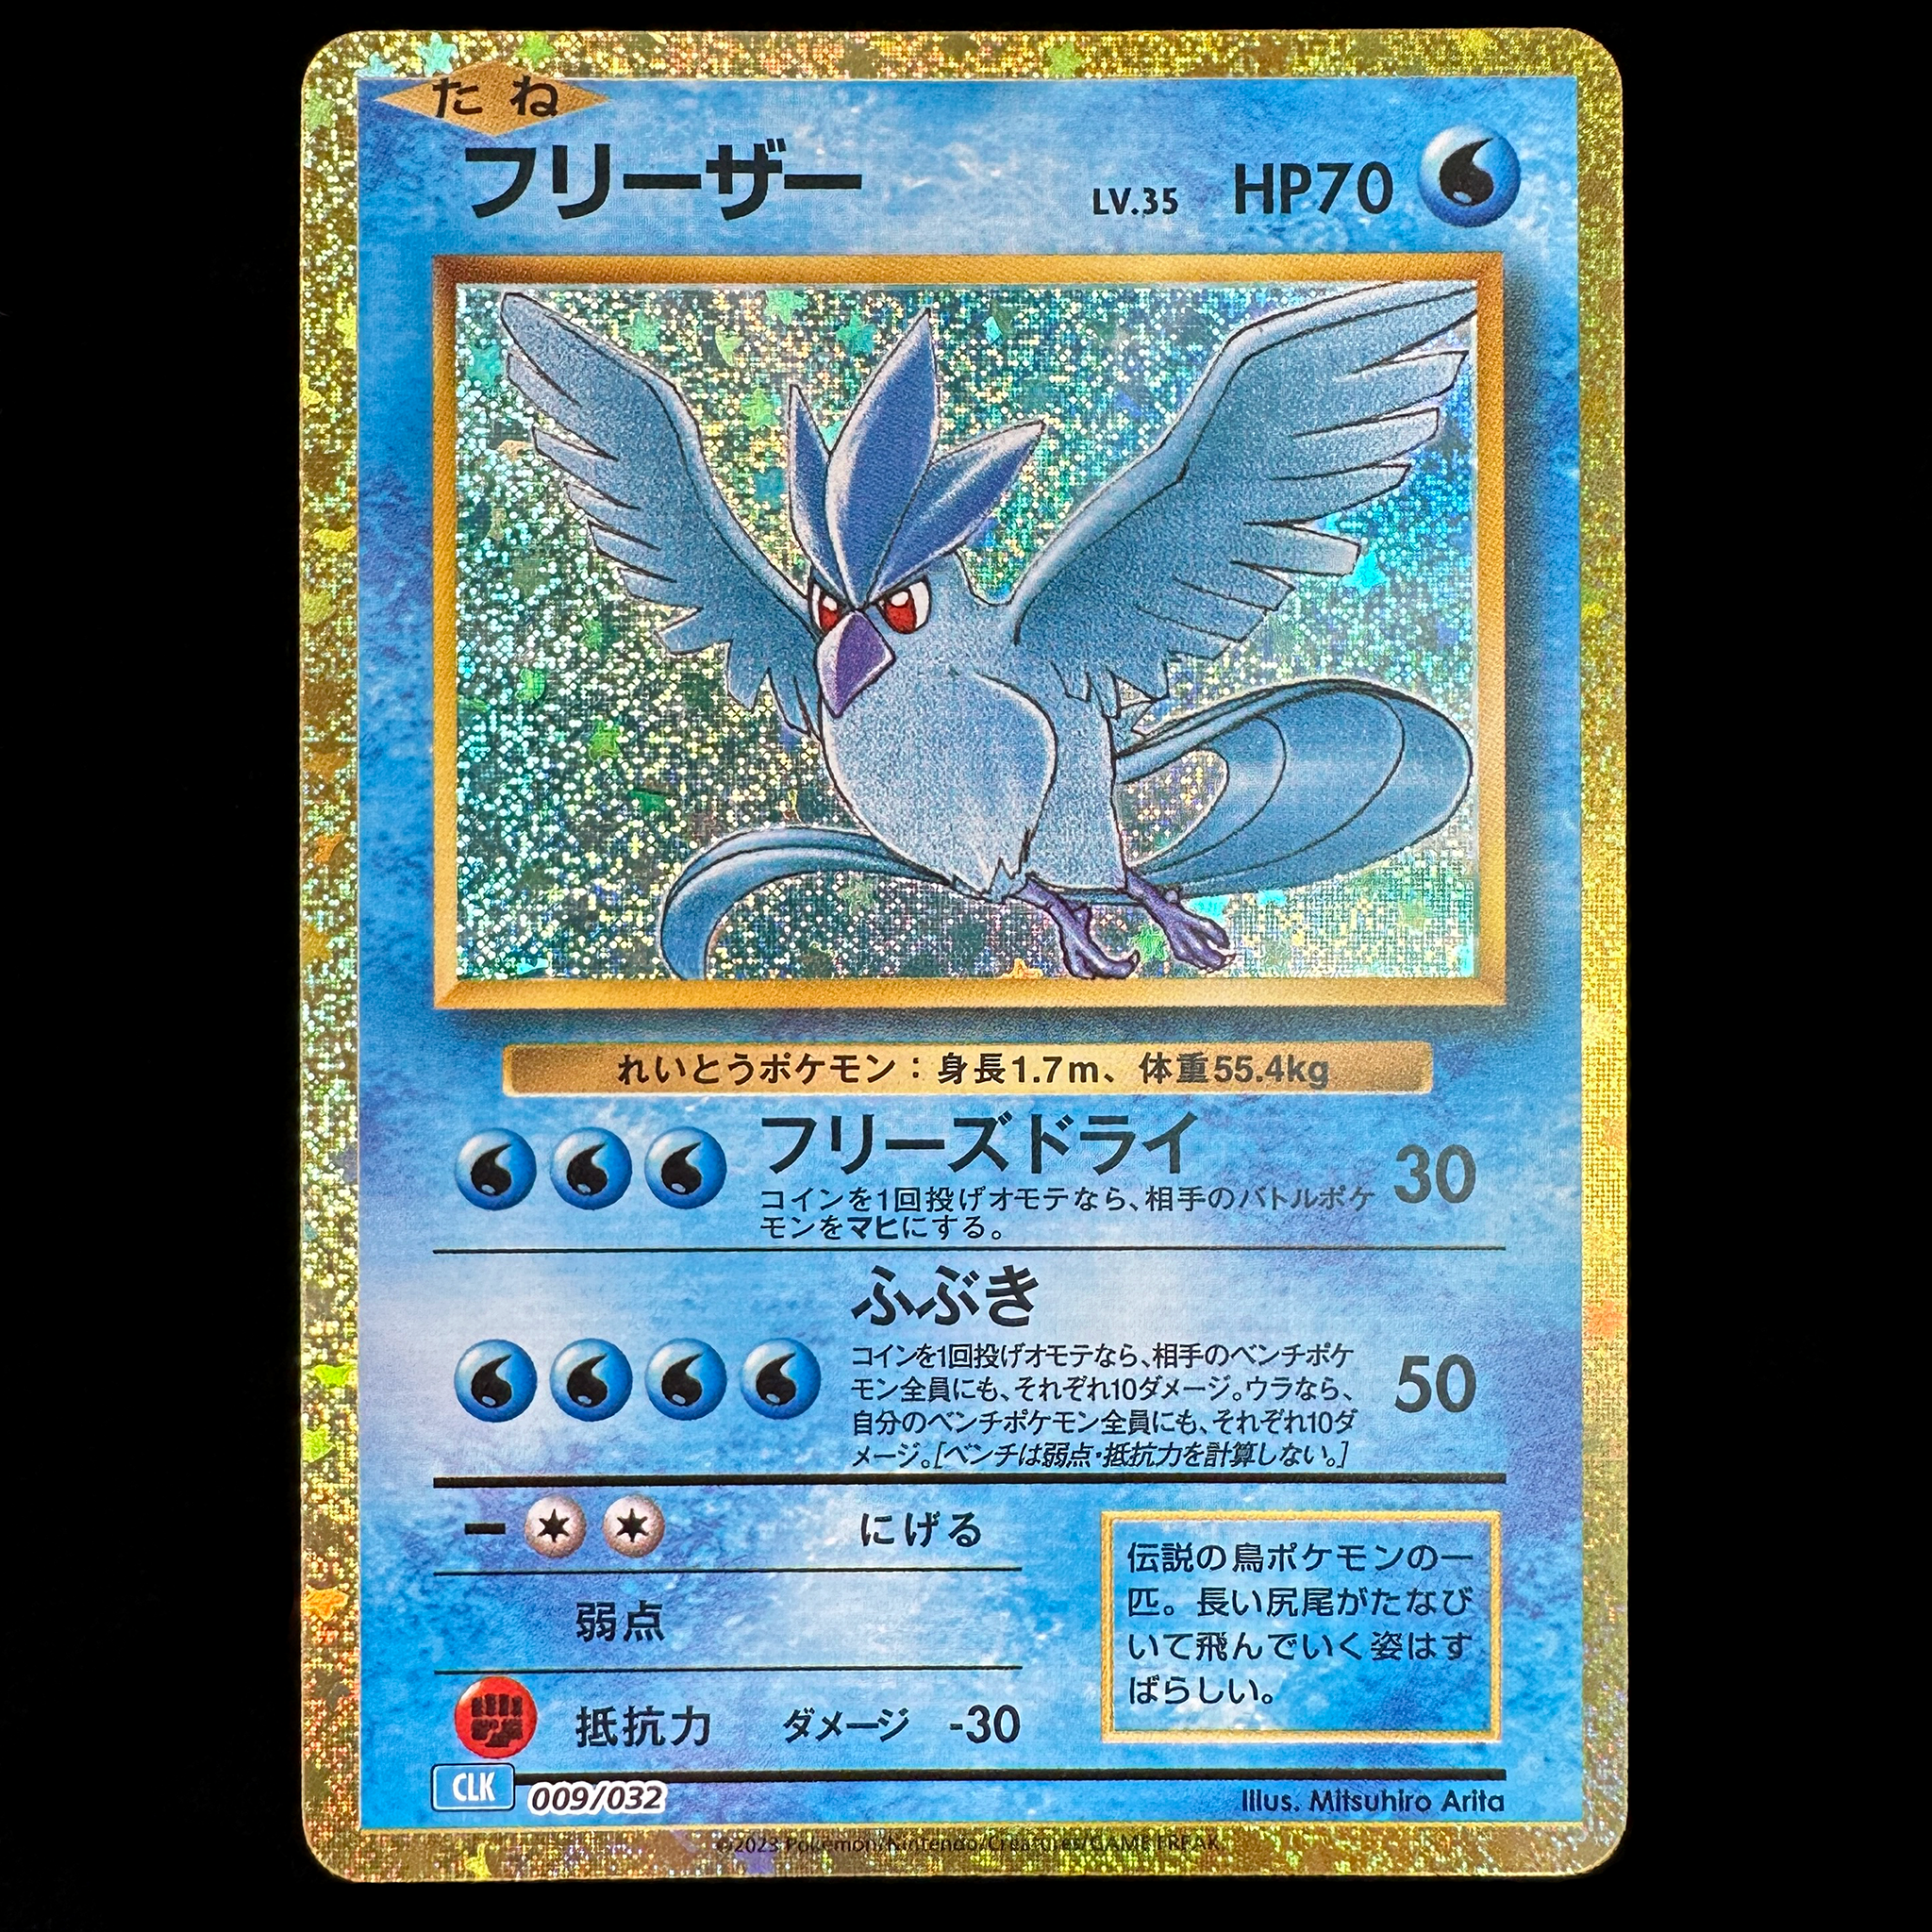 Pokémon Card Game Scarlet & Violet ｢Pokémon Card Game Classic｣  Pokémon Card Game CLK 009/032  Articuno